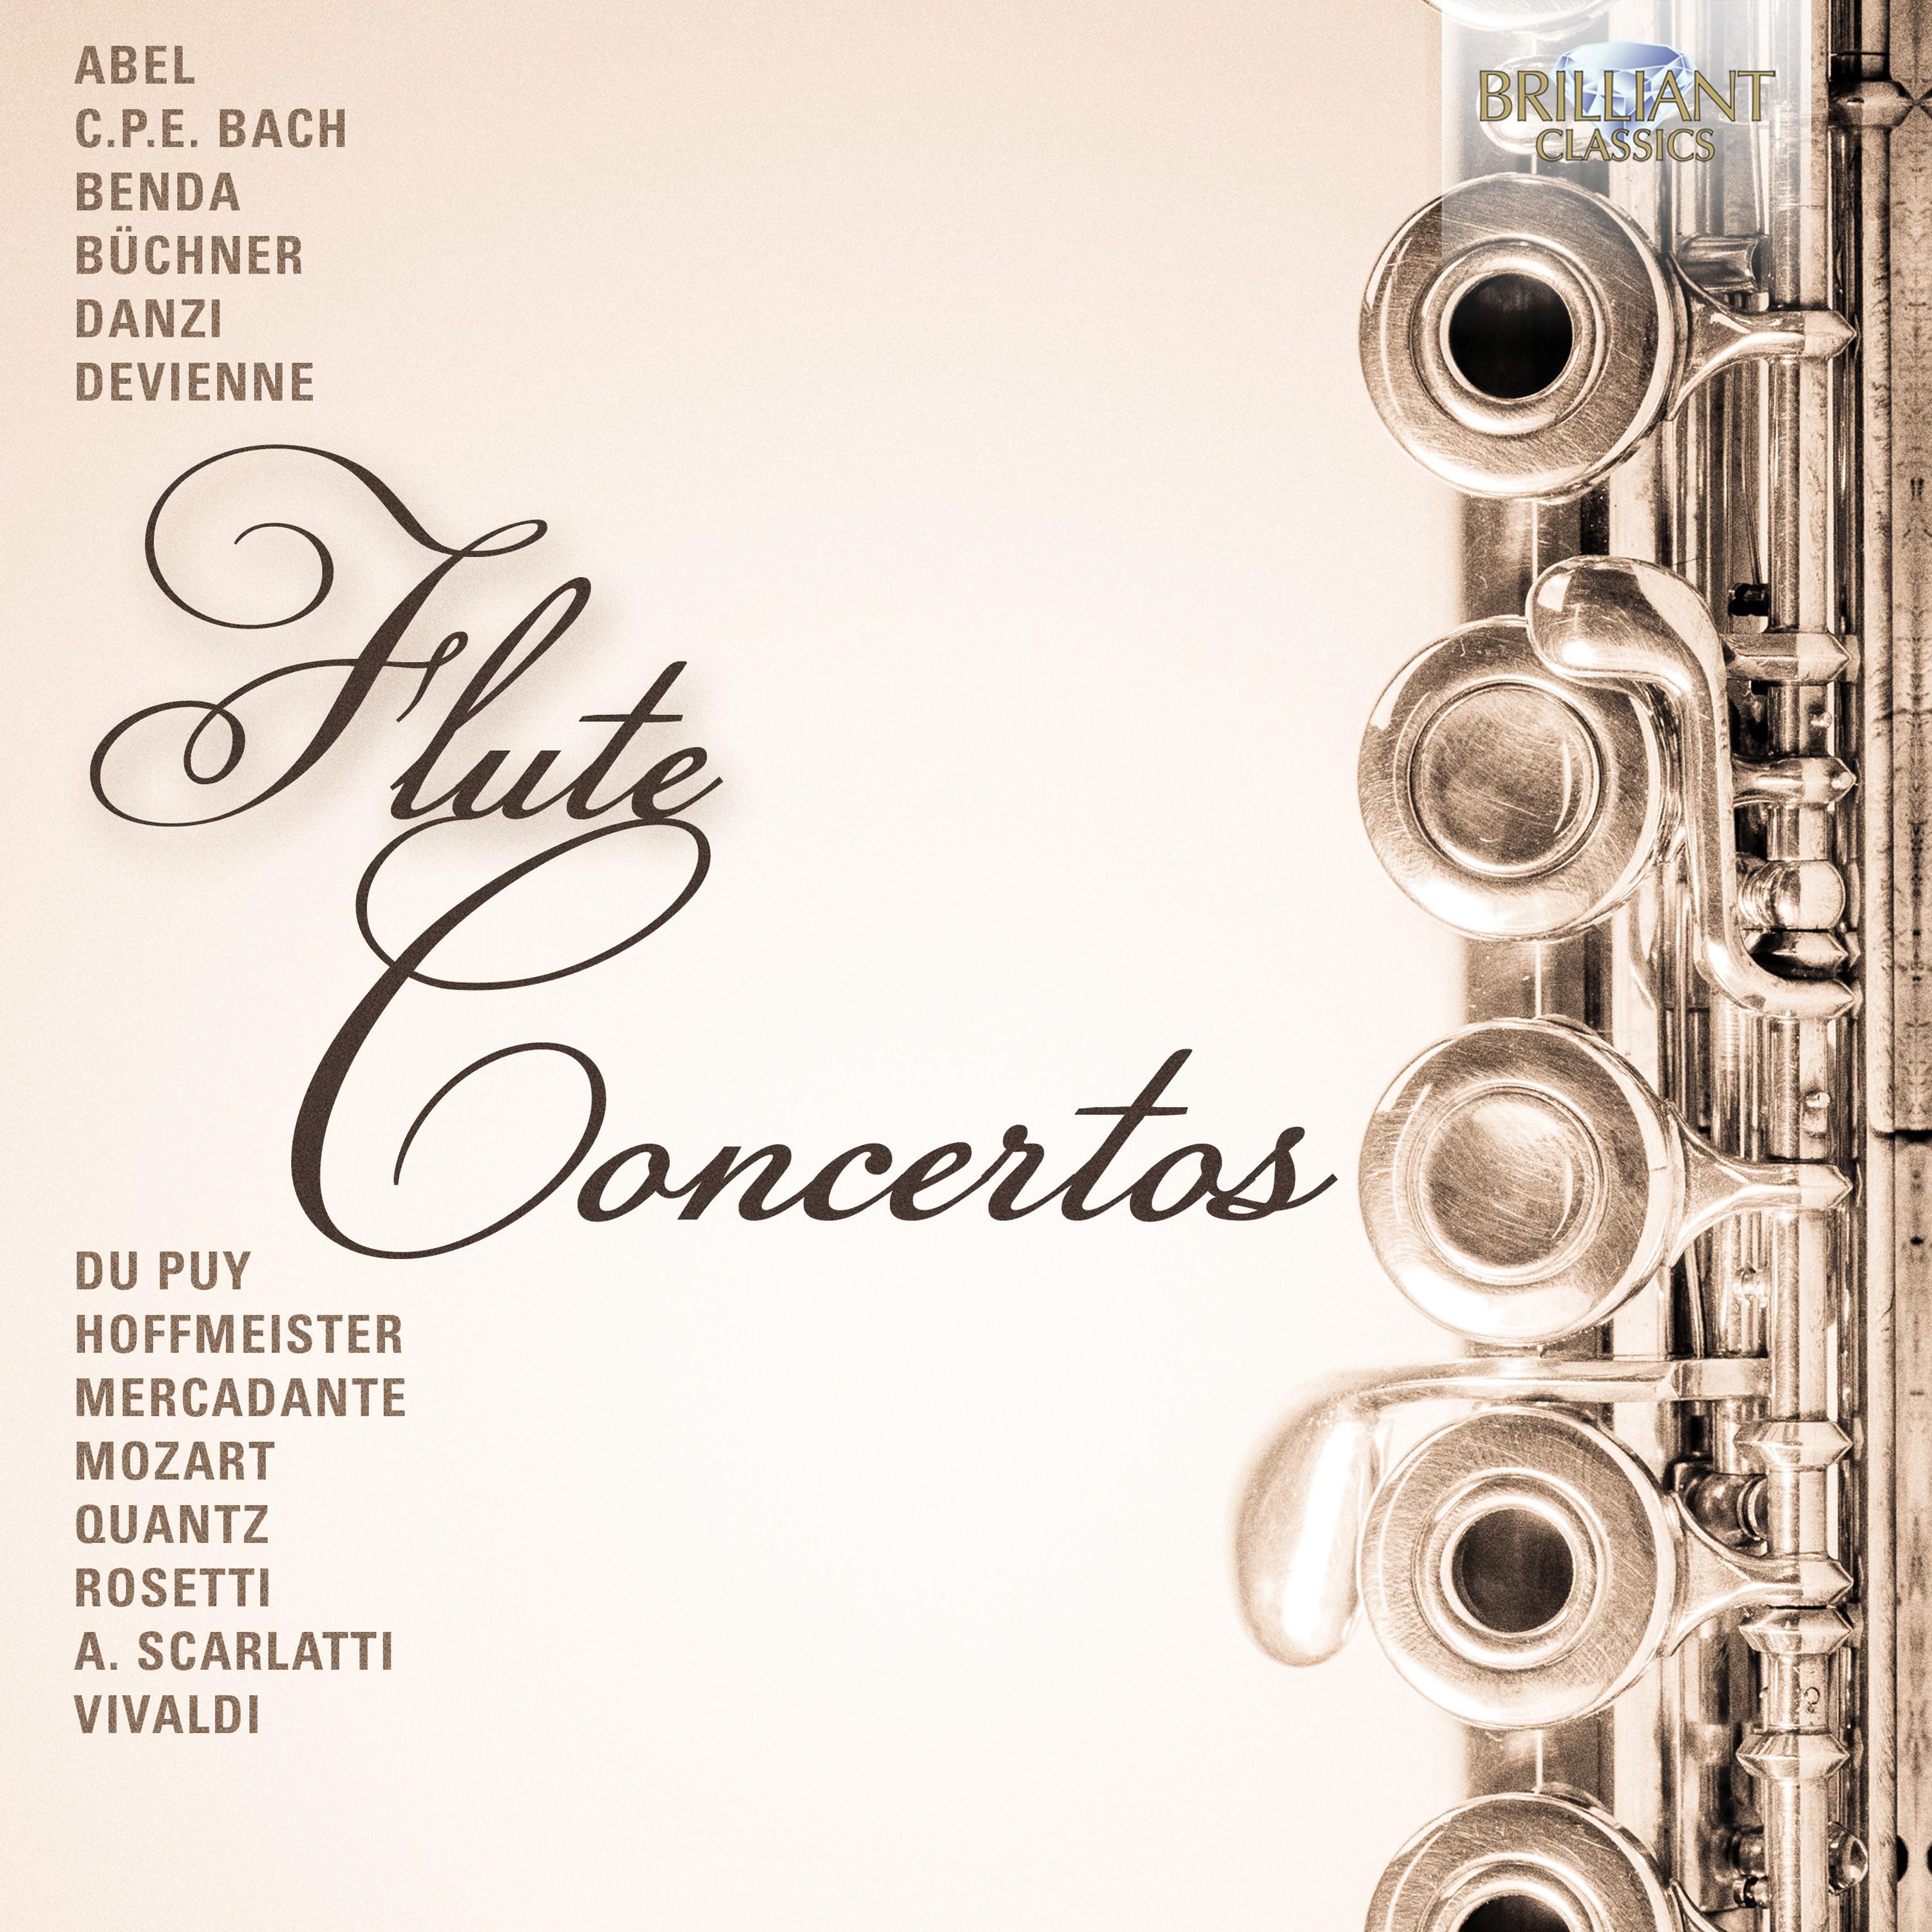 Concerto in B-Flat Major, Wq. 164: III. Allegro moderato